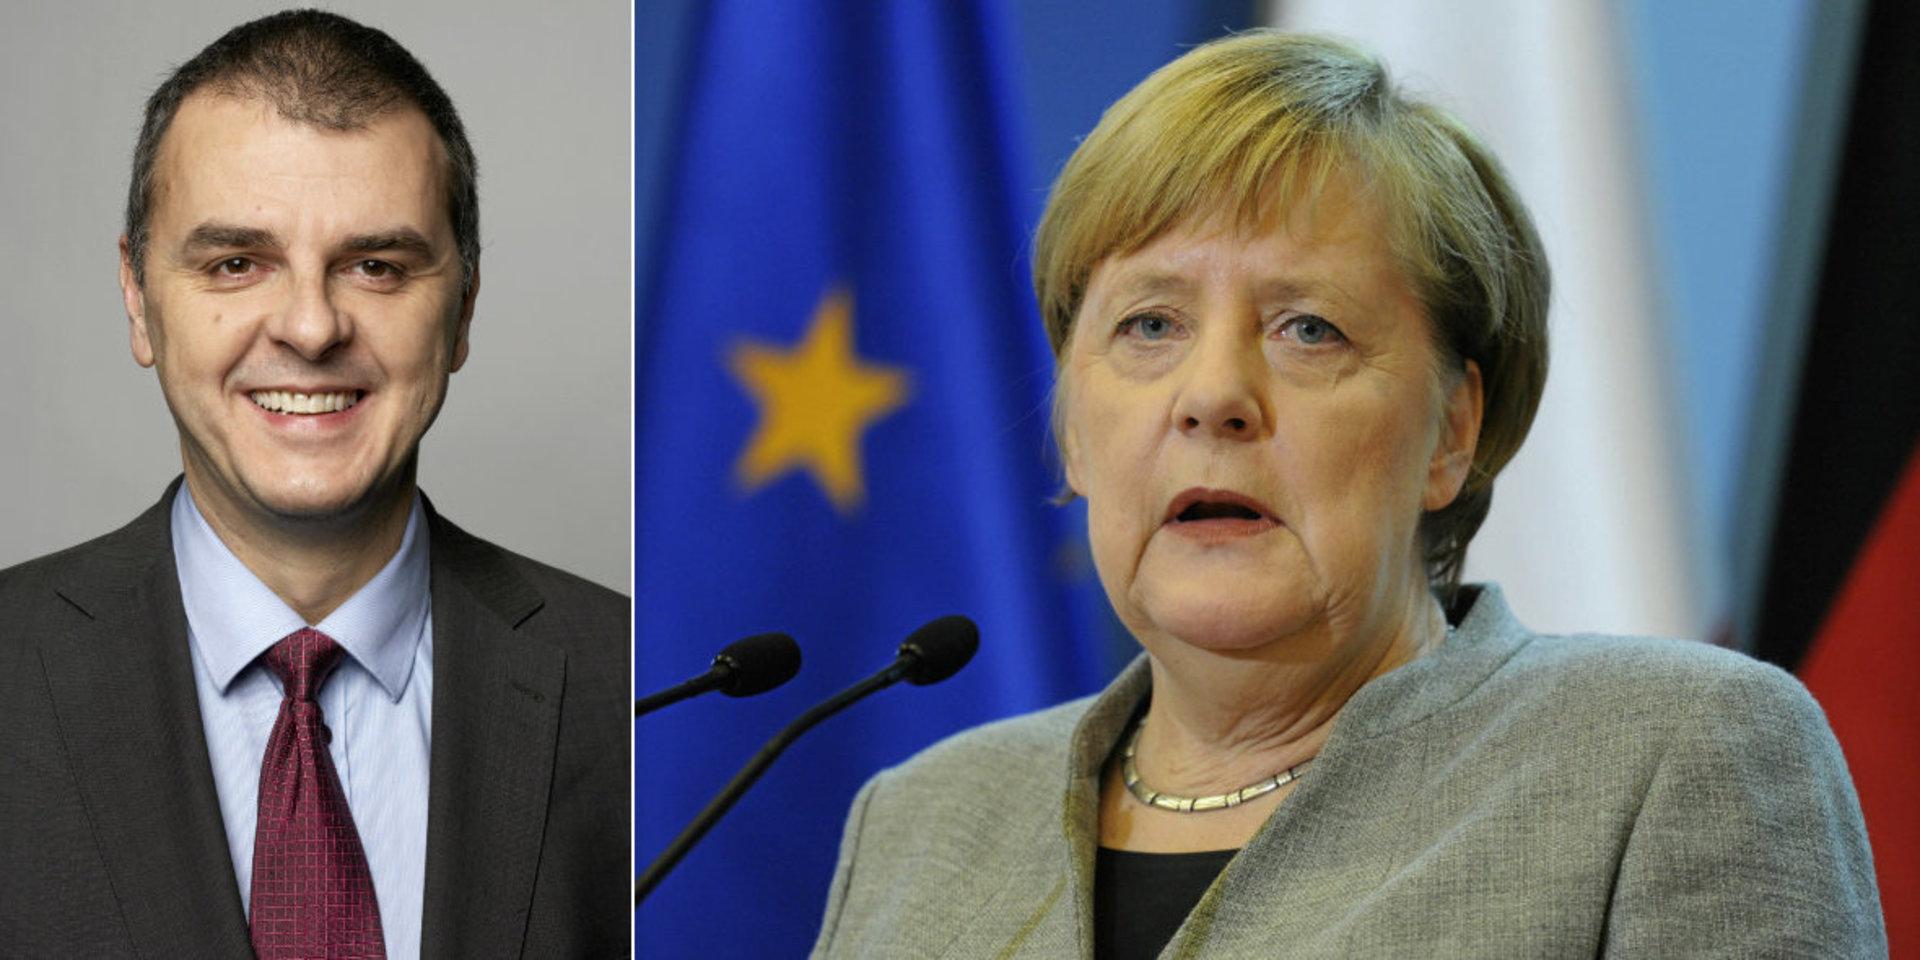 Jasenko Selimovic (L), Europaparlamentariker och Angela Merkel, Tysklands förbundskansler.